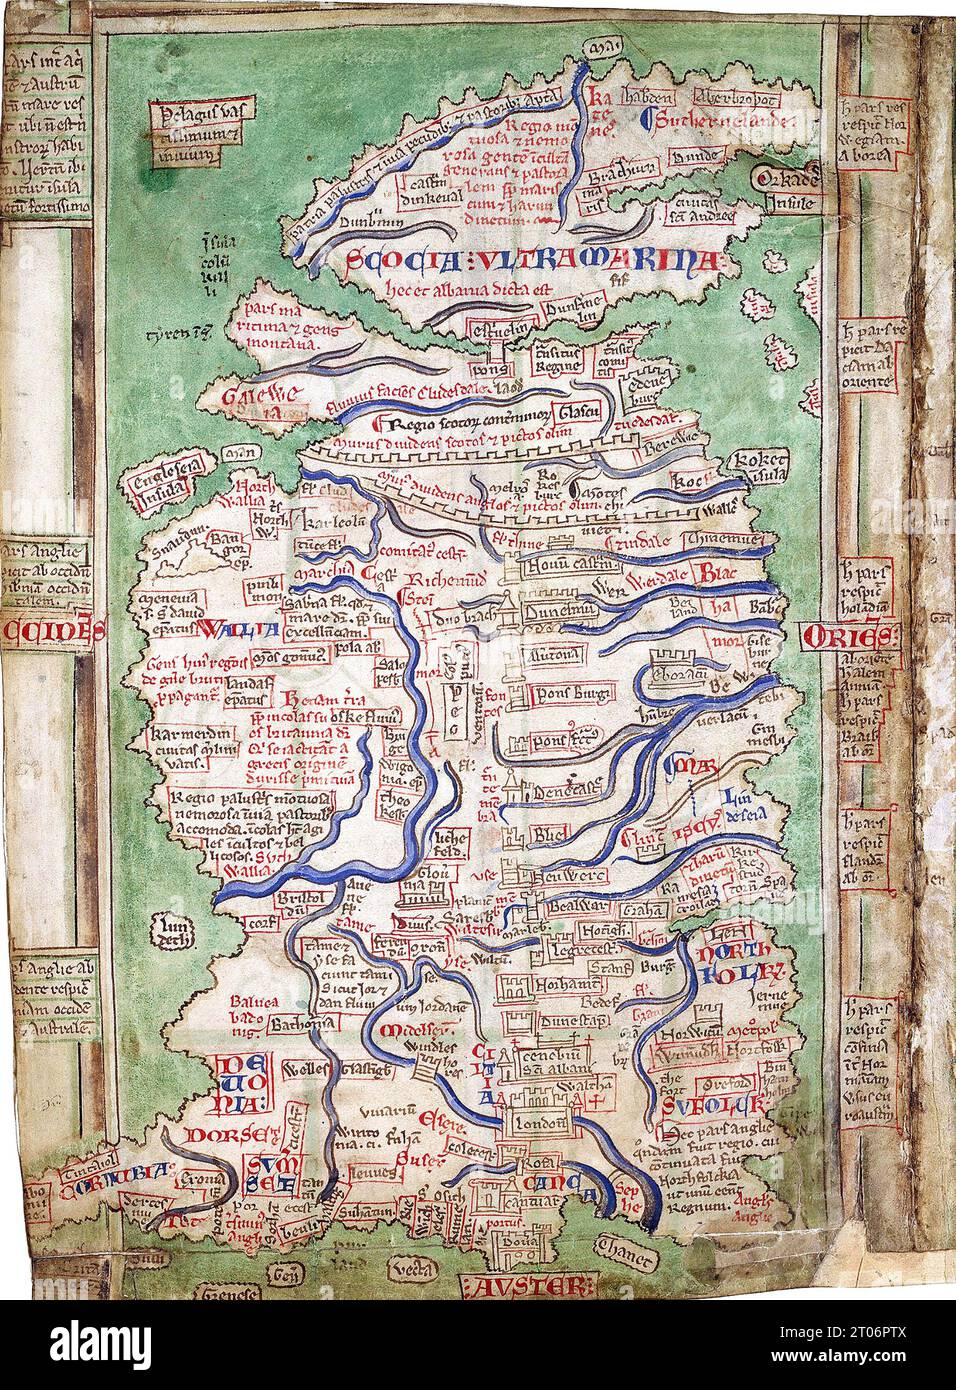 MATTHEW PARRIS (c 1200-1259) monaco benedettino inglese e cronista. Una delle sue mappe della Gran Bretagna con il Vallo di Adriano e il Vallo Antoniino chiaramente mostrati. Foto Stock